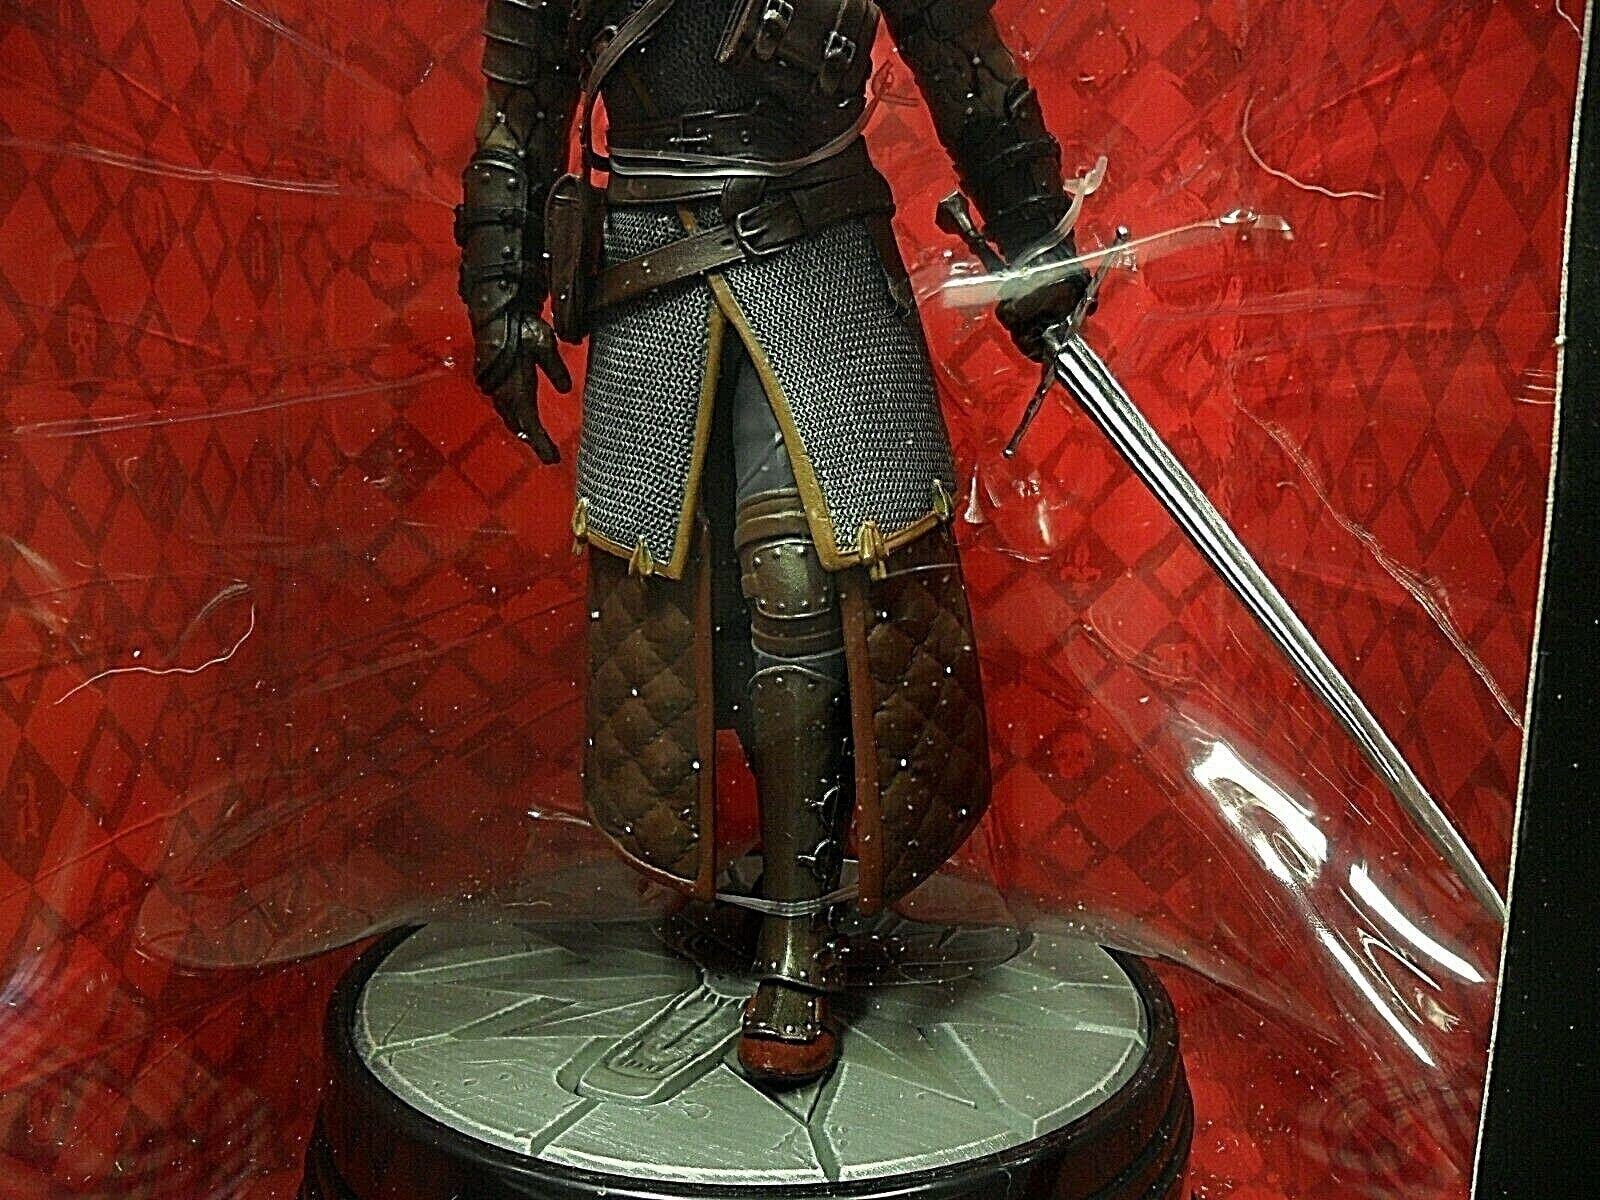 Dark Horse Deluxe Witcher Figure Geralt Grandmaster Figure